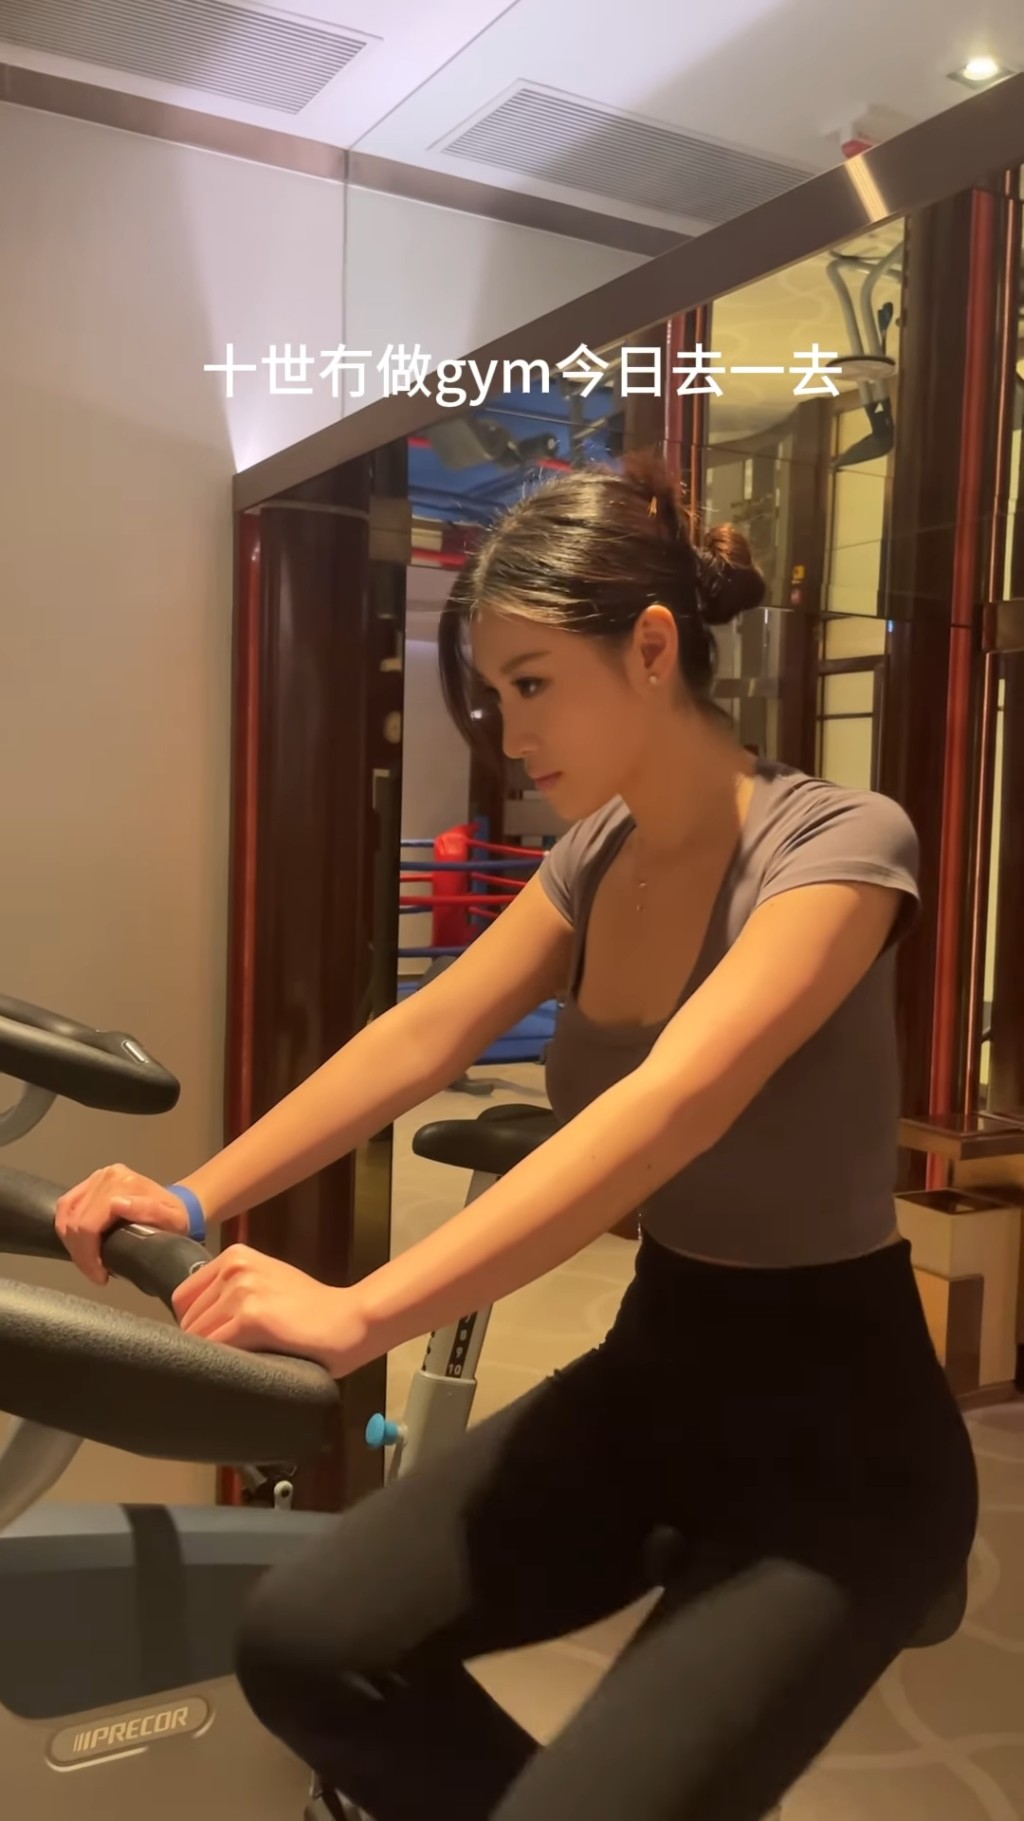 郭佩文昨日（25日）在社交网分享一段在健身室的影片。